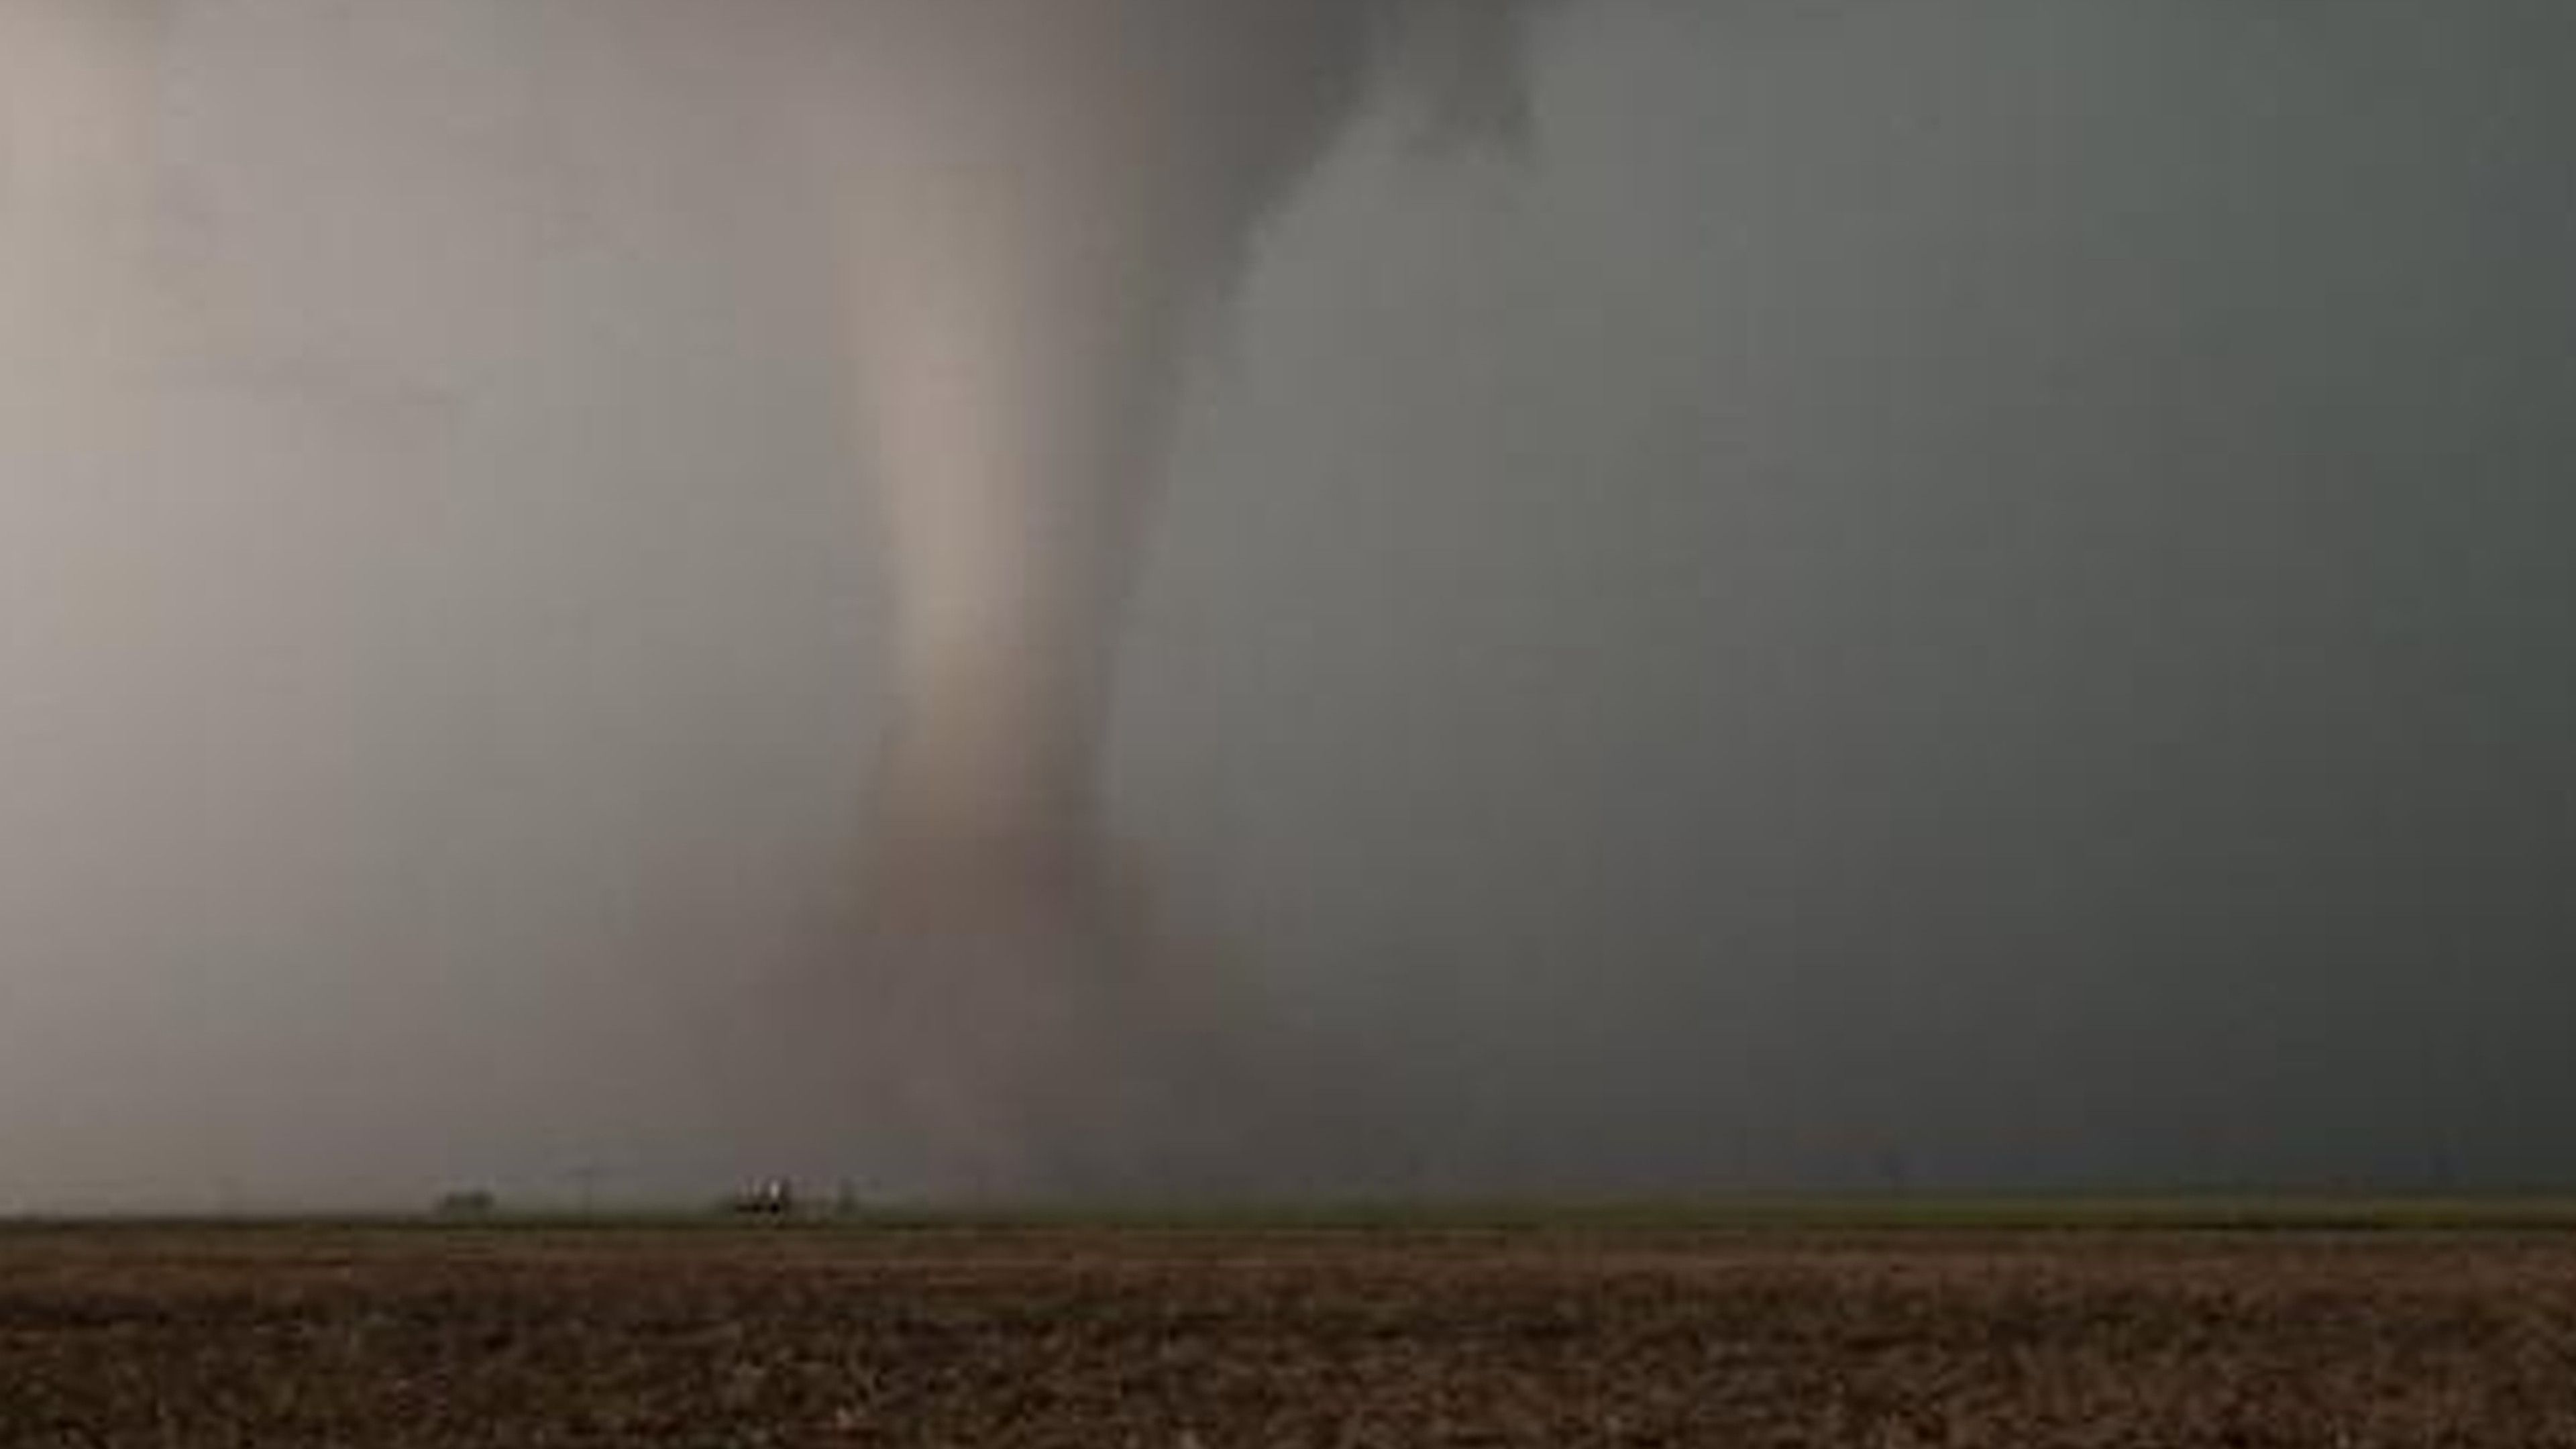 Why Do So Many Tornadoes Strike The U.S.?